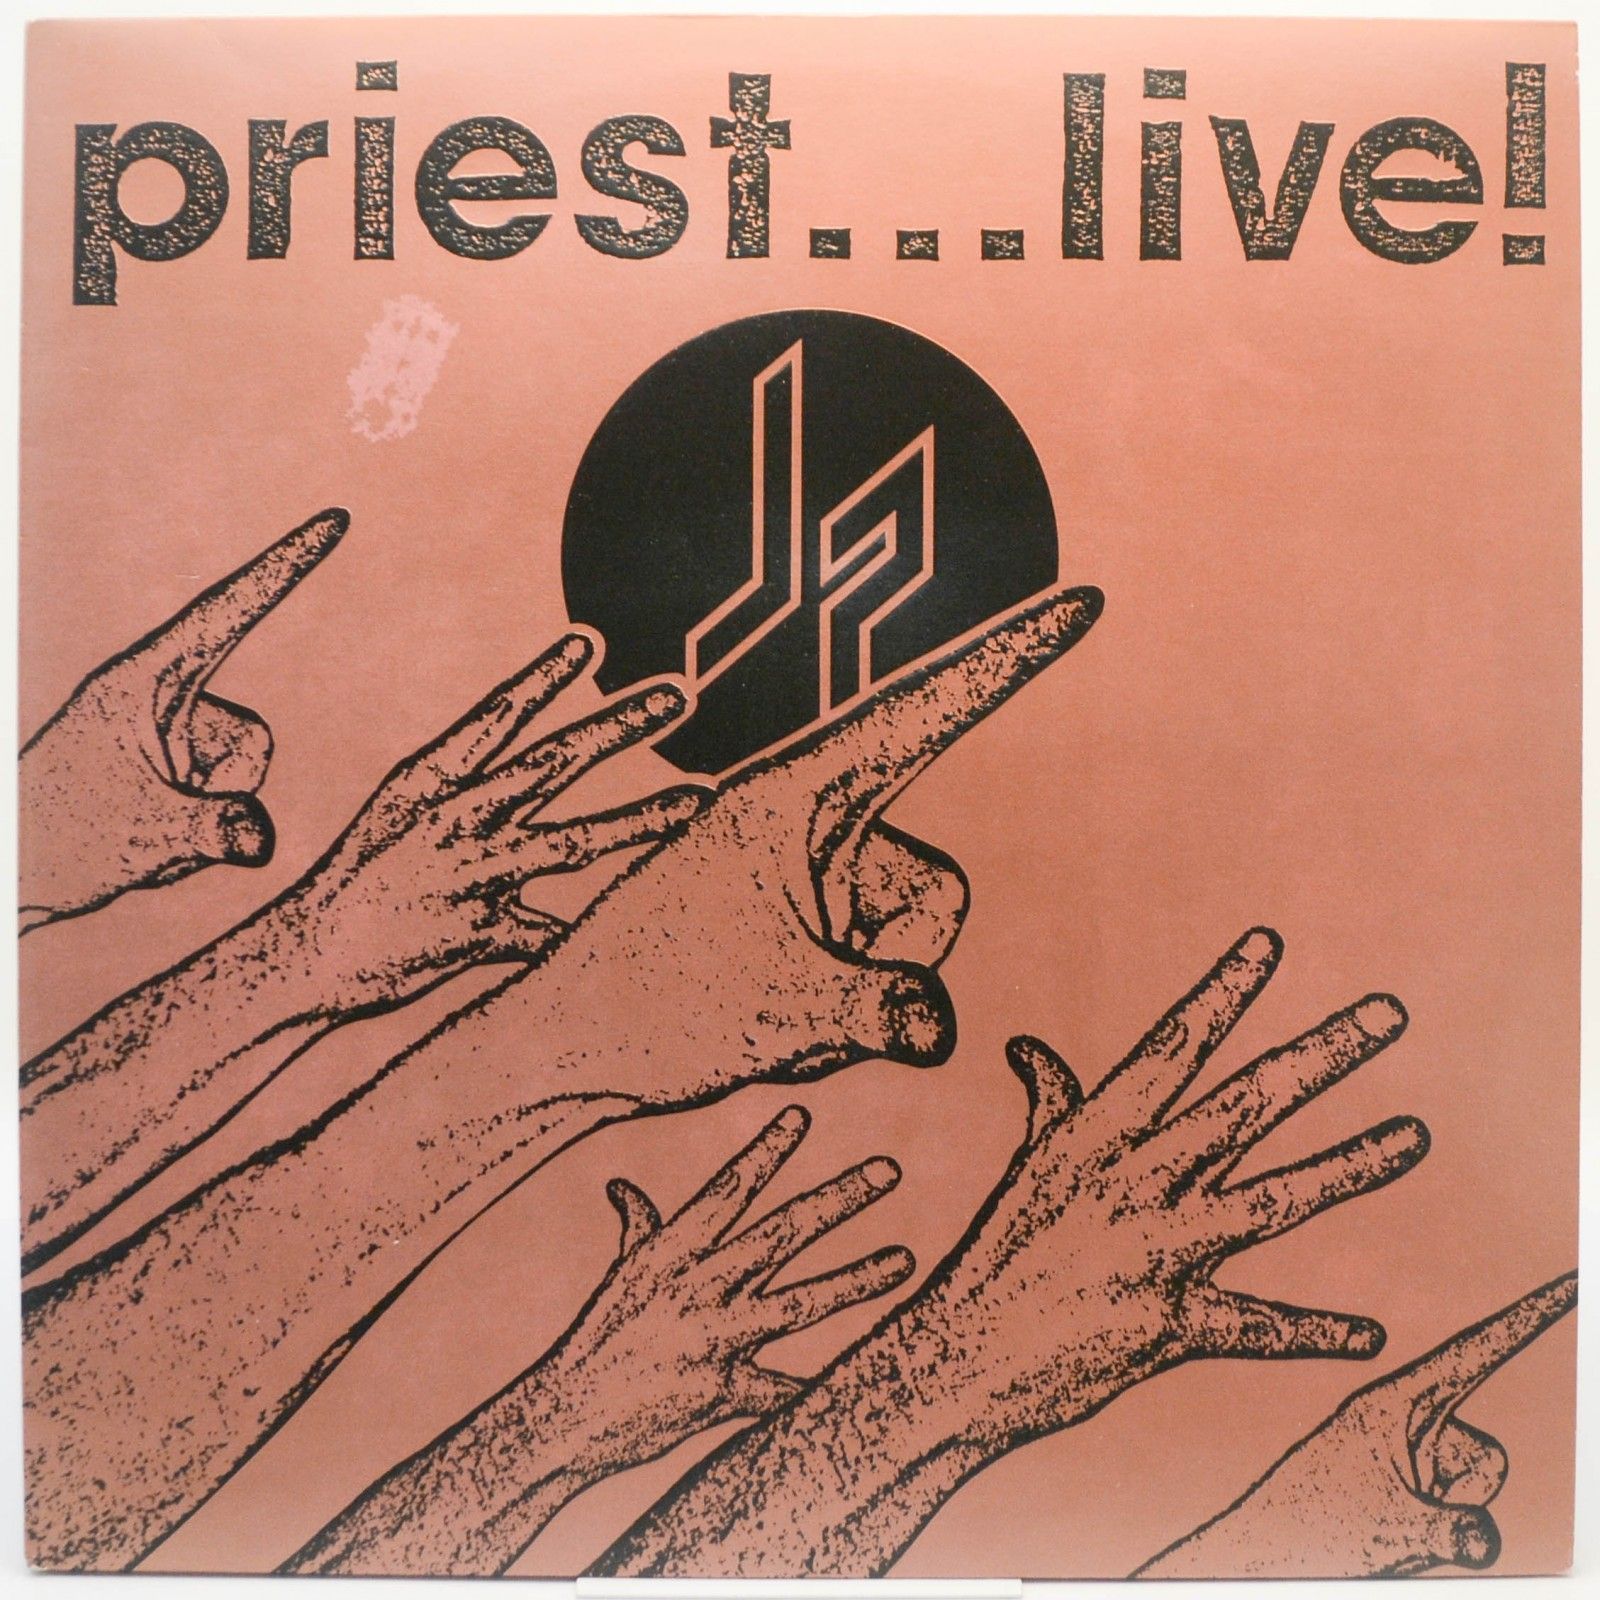 Judas Priest — Priest...Live! (2LP), 1975